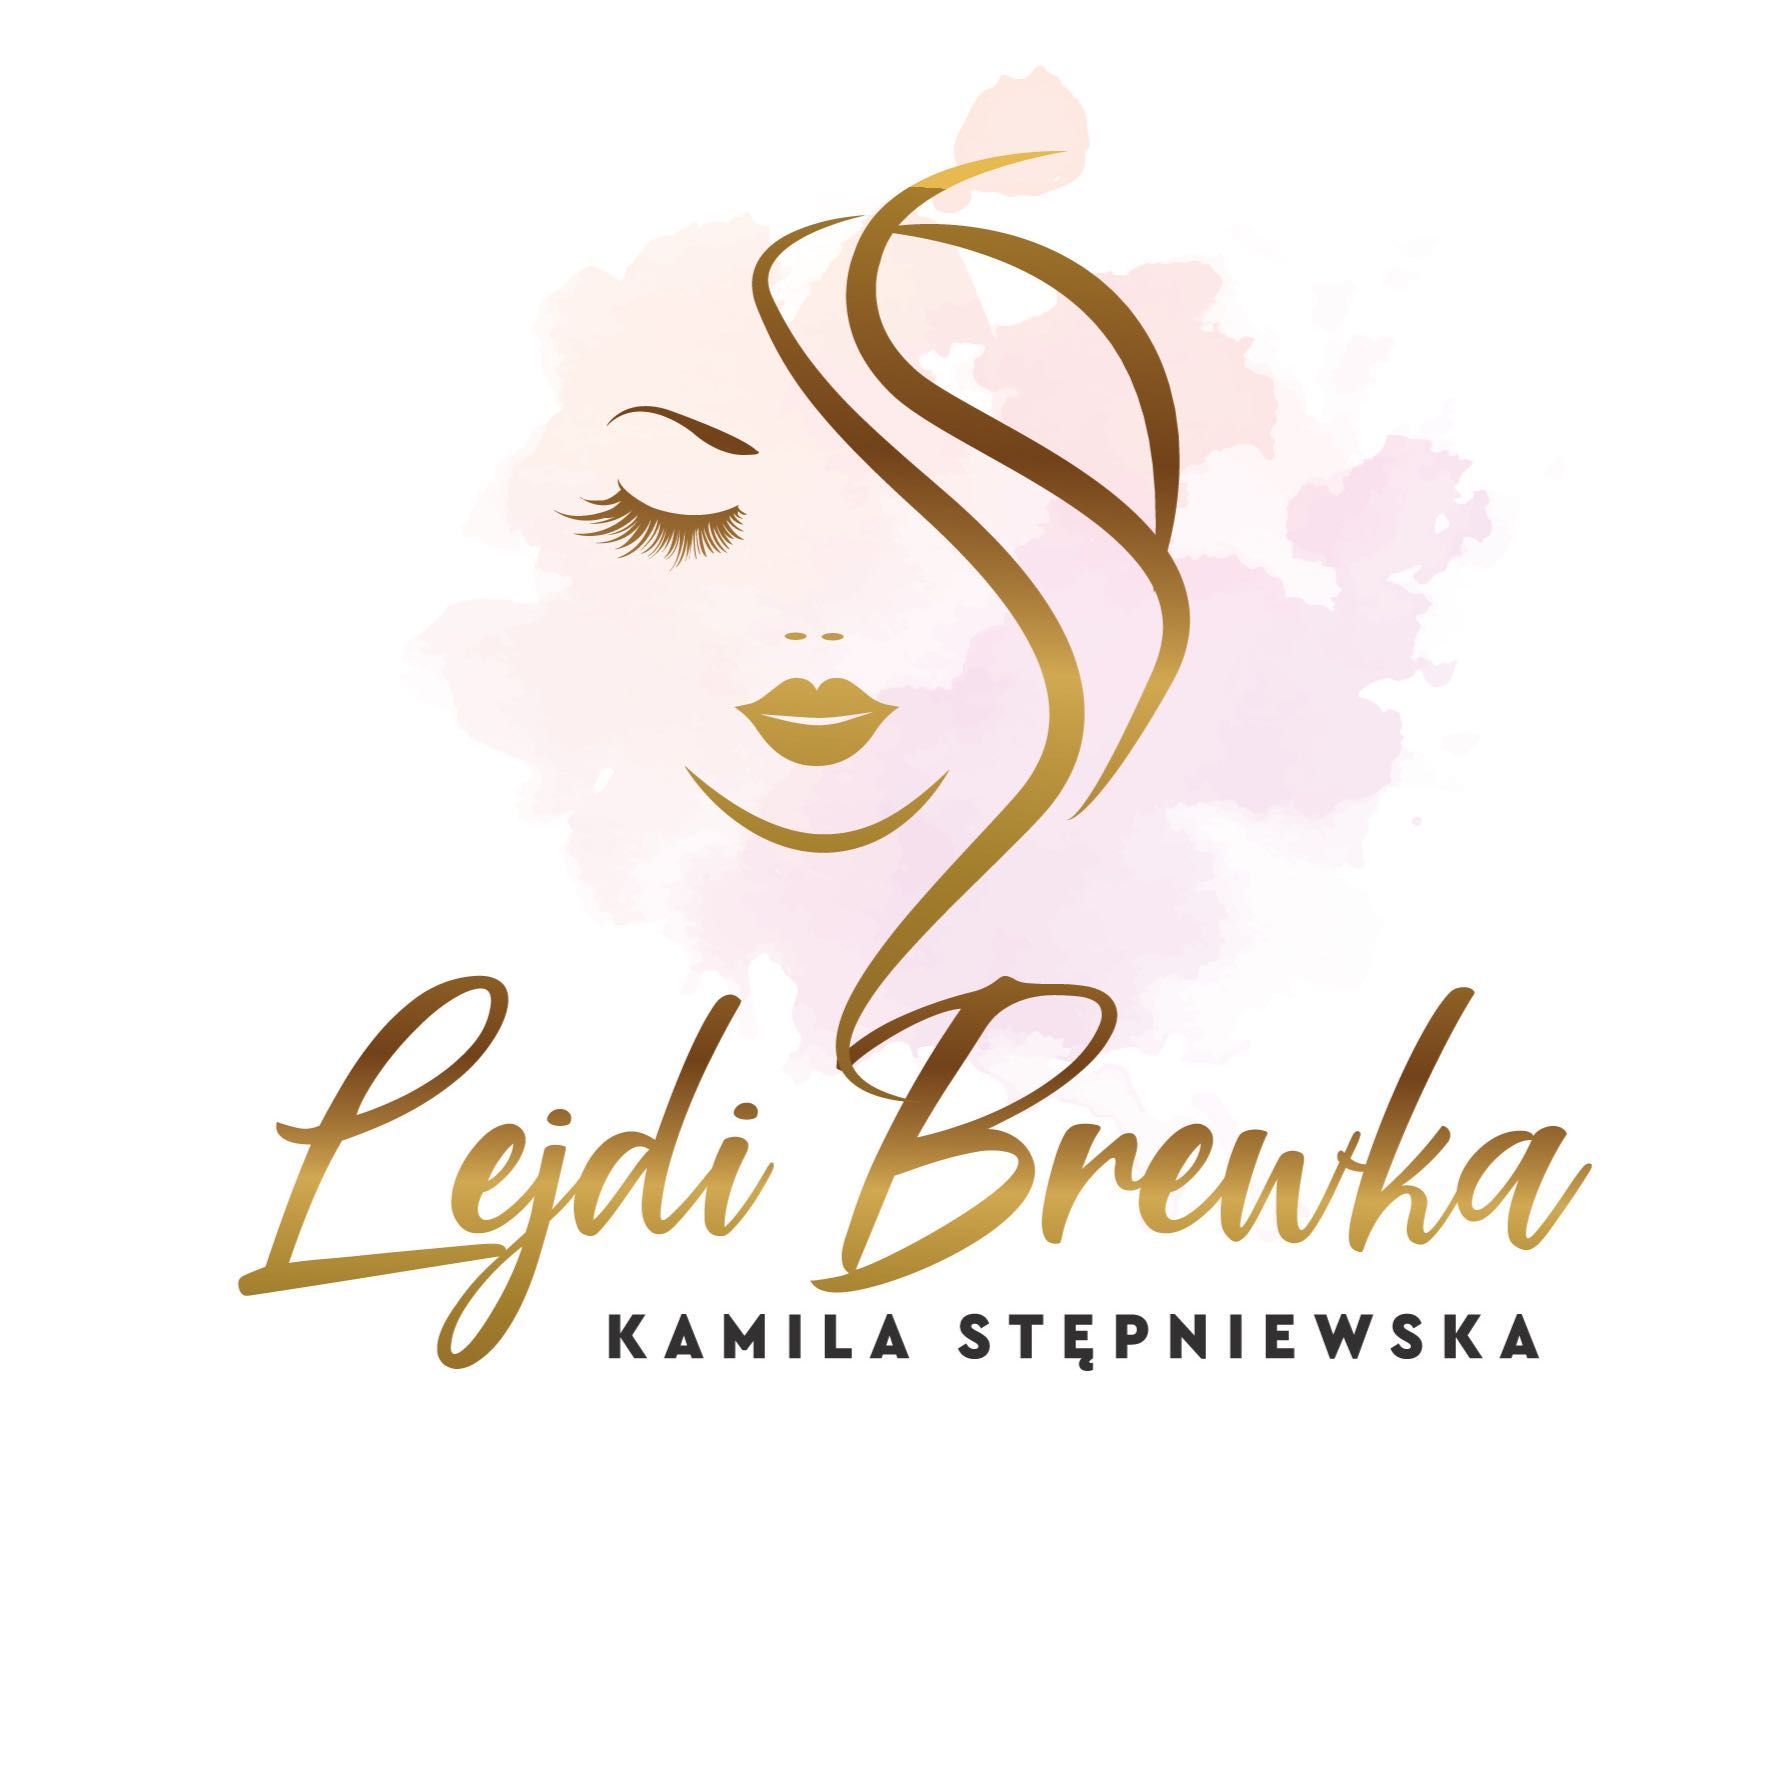 Lejdi brewka, Bernardyńska 3, GOLD ESTHÈTIQUE salon medycyny estetycznej, 02-904, Warszawa, Mokotów